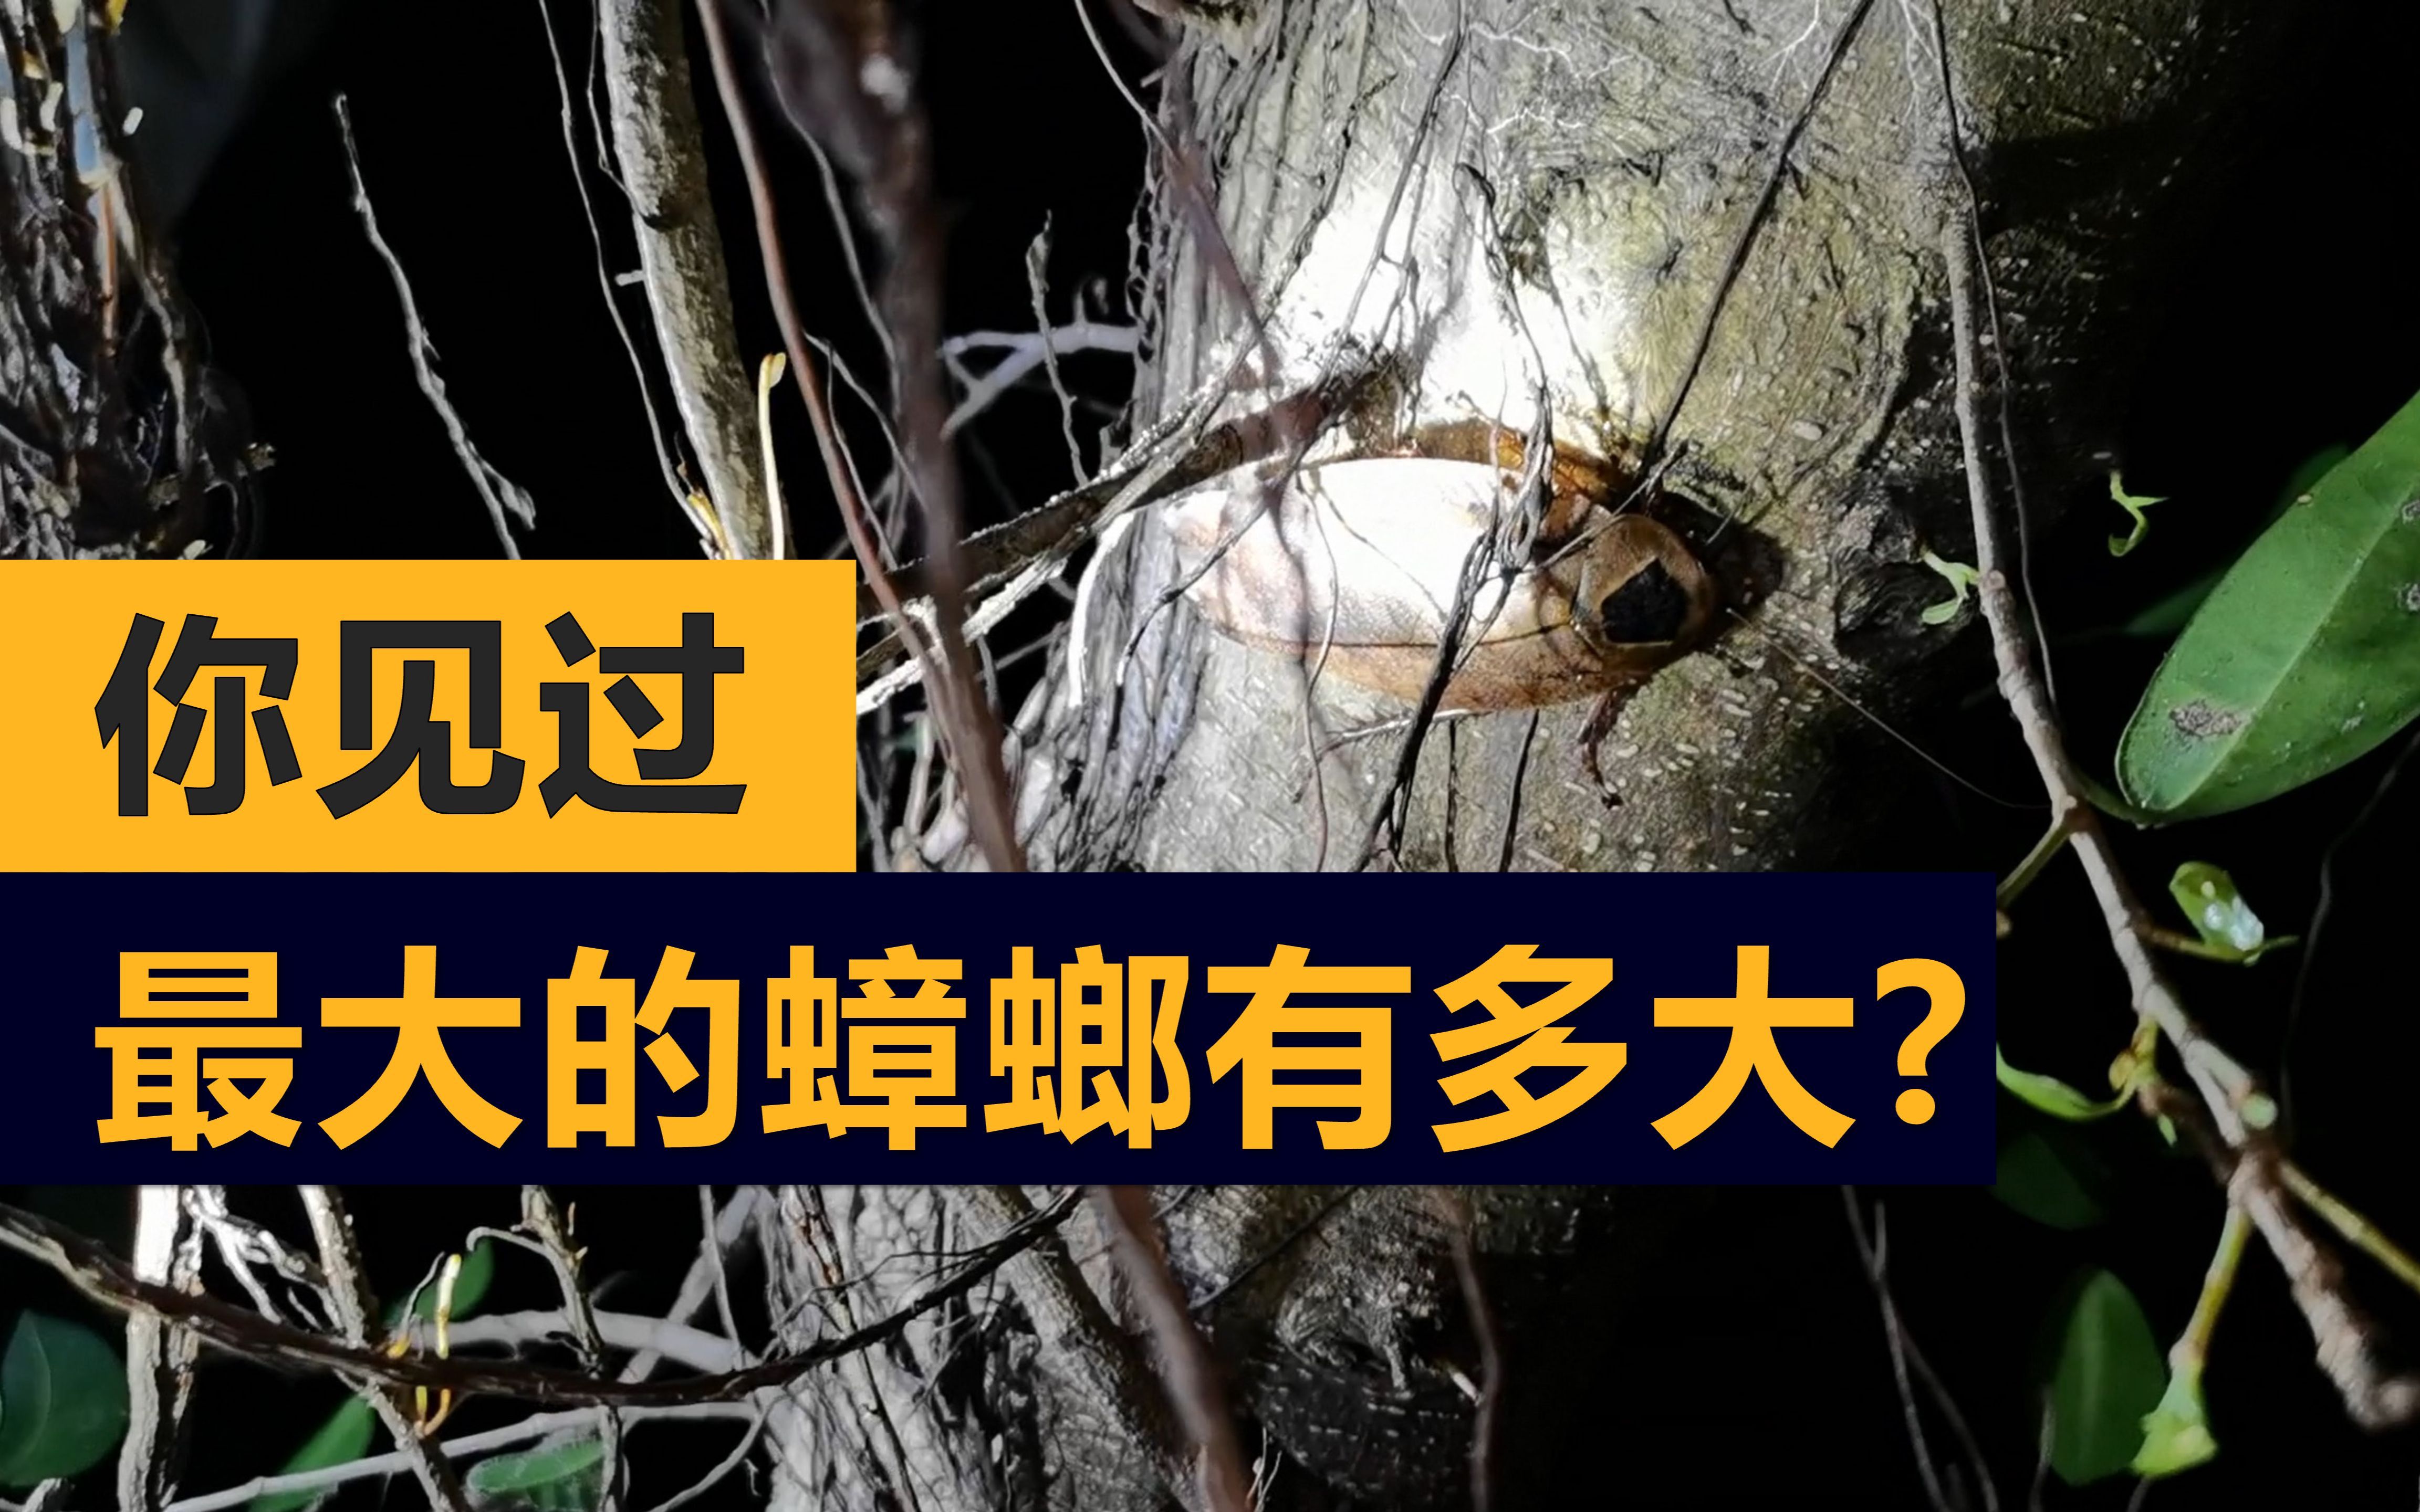 国内最大的蟑螂（广州中银大厦，除外）长啥样？